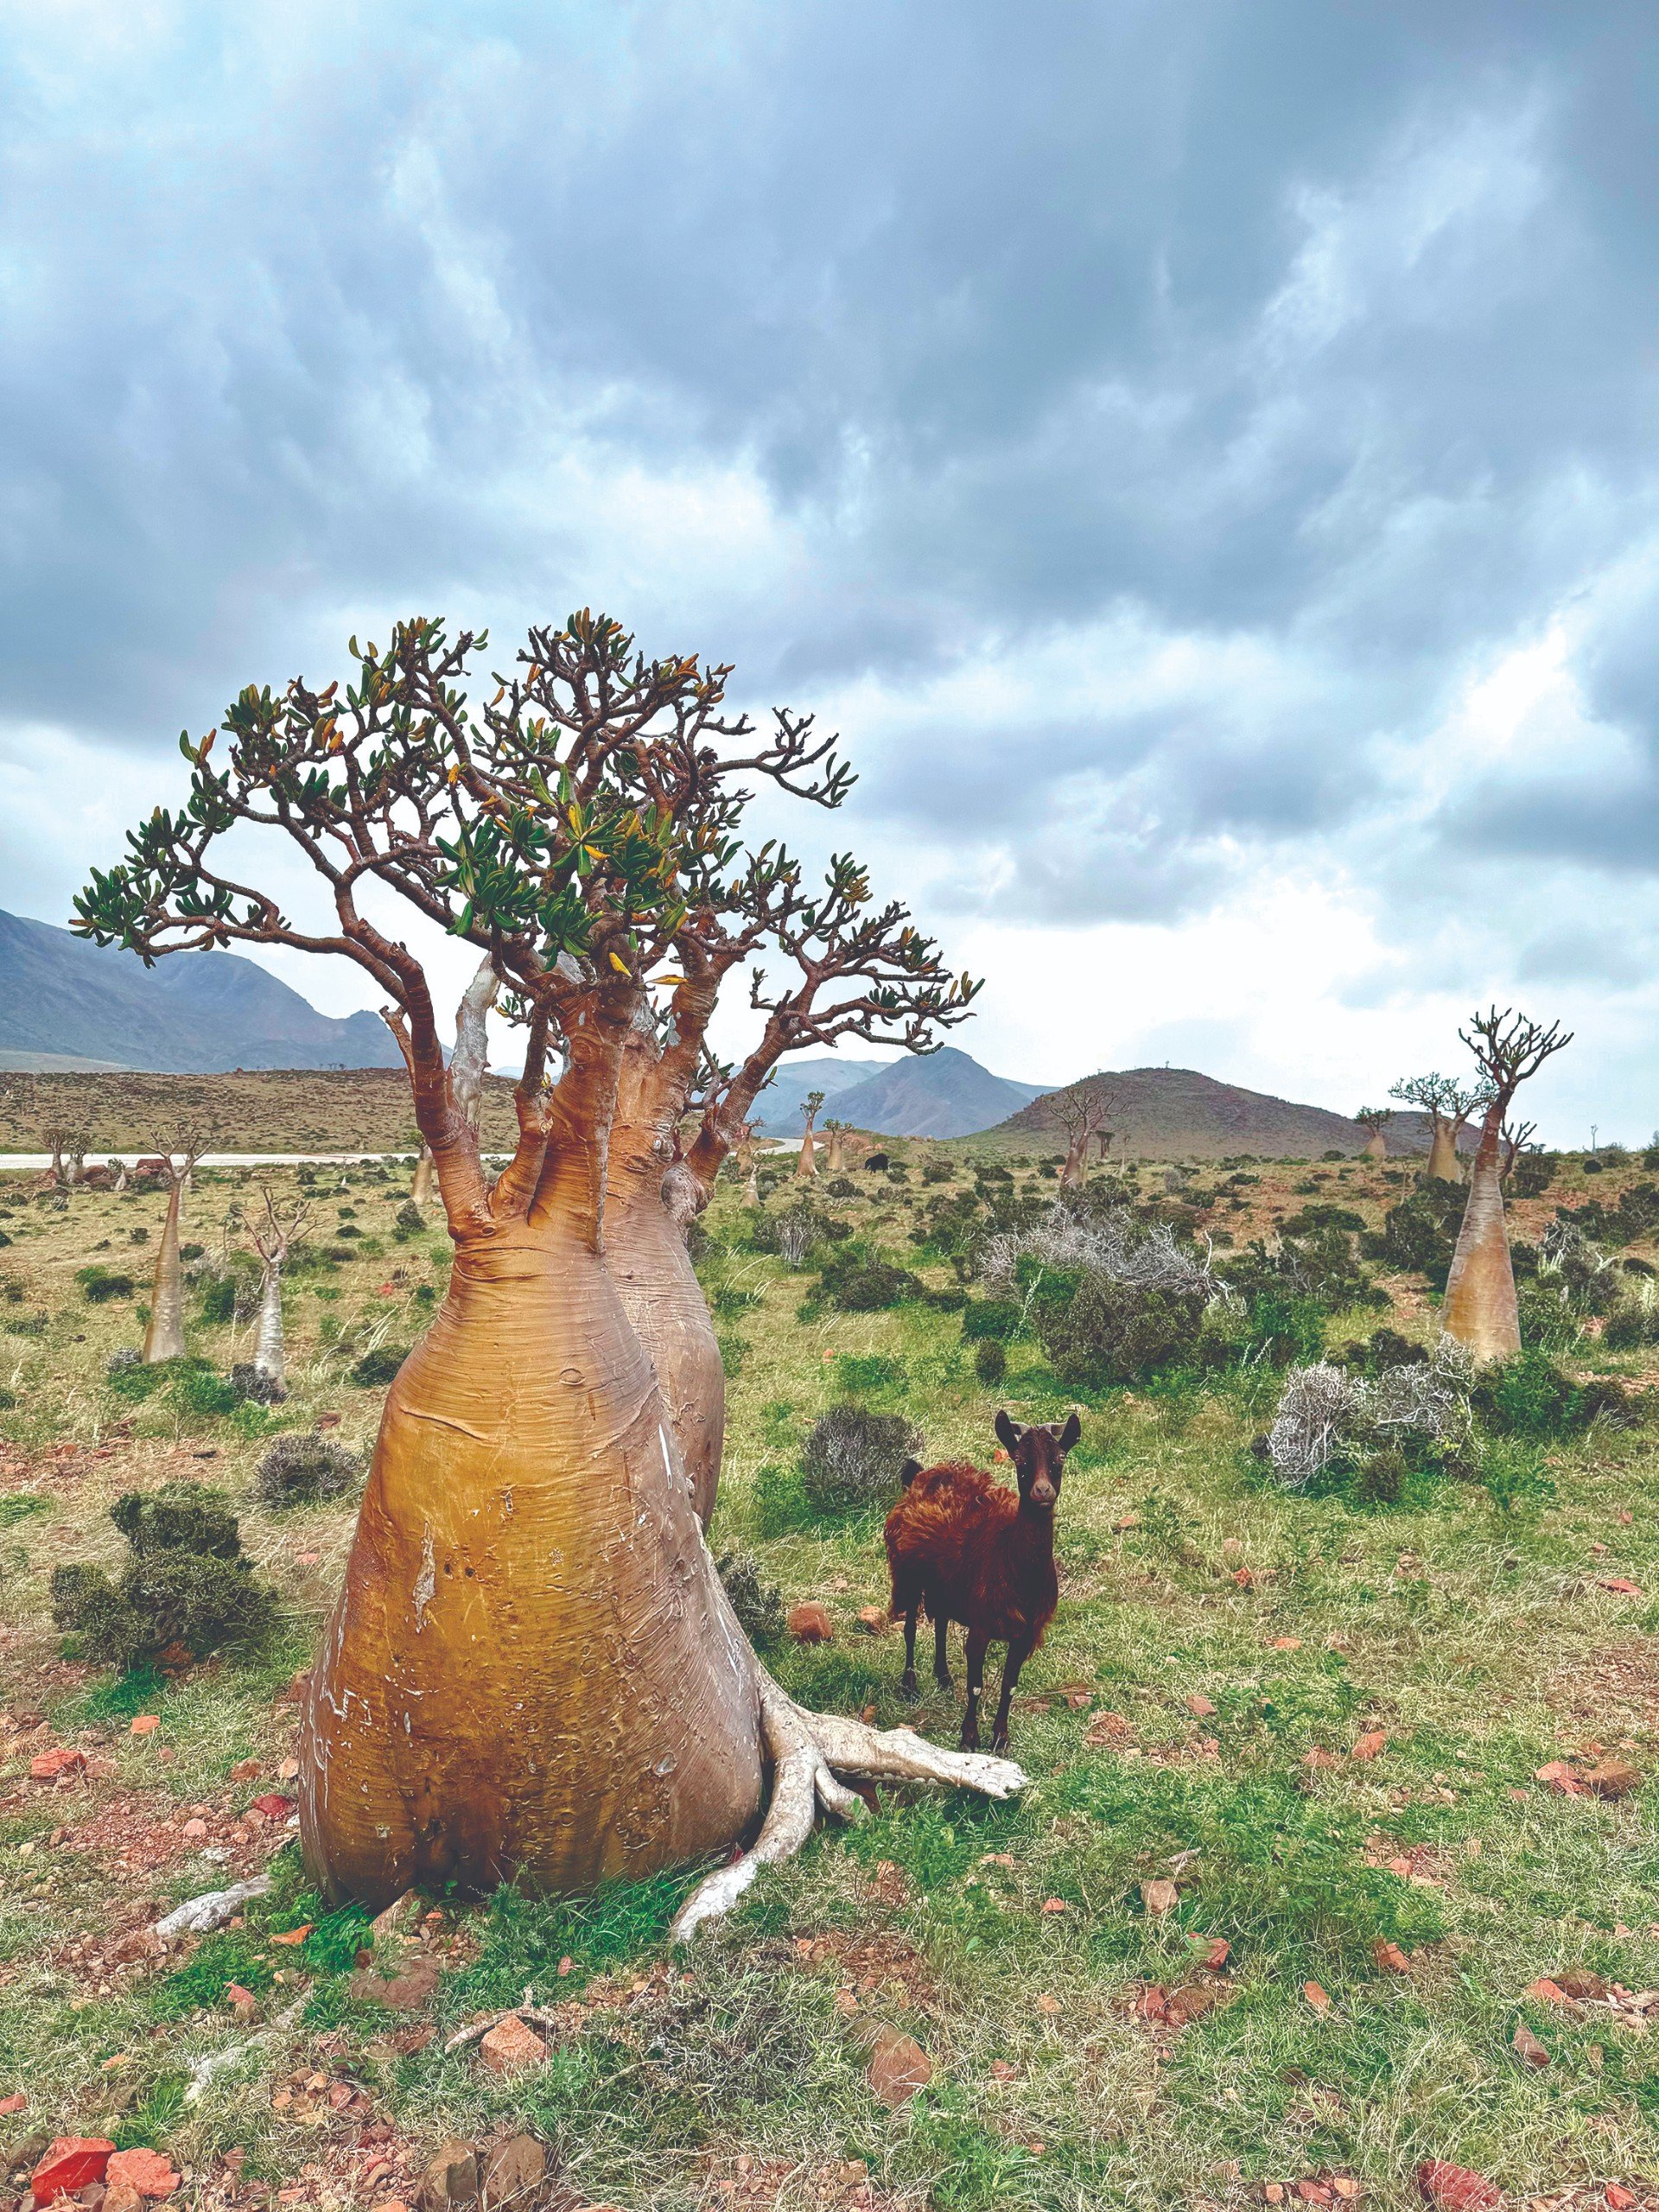 Socotra: Hòn đảo của những điều thú vị